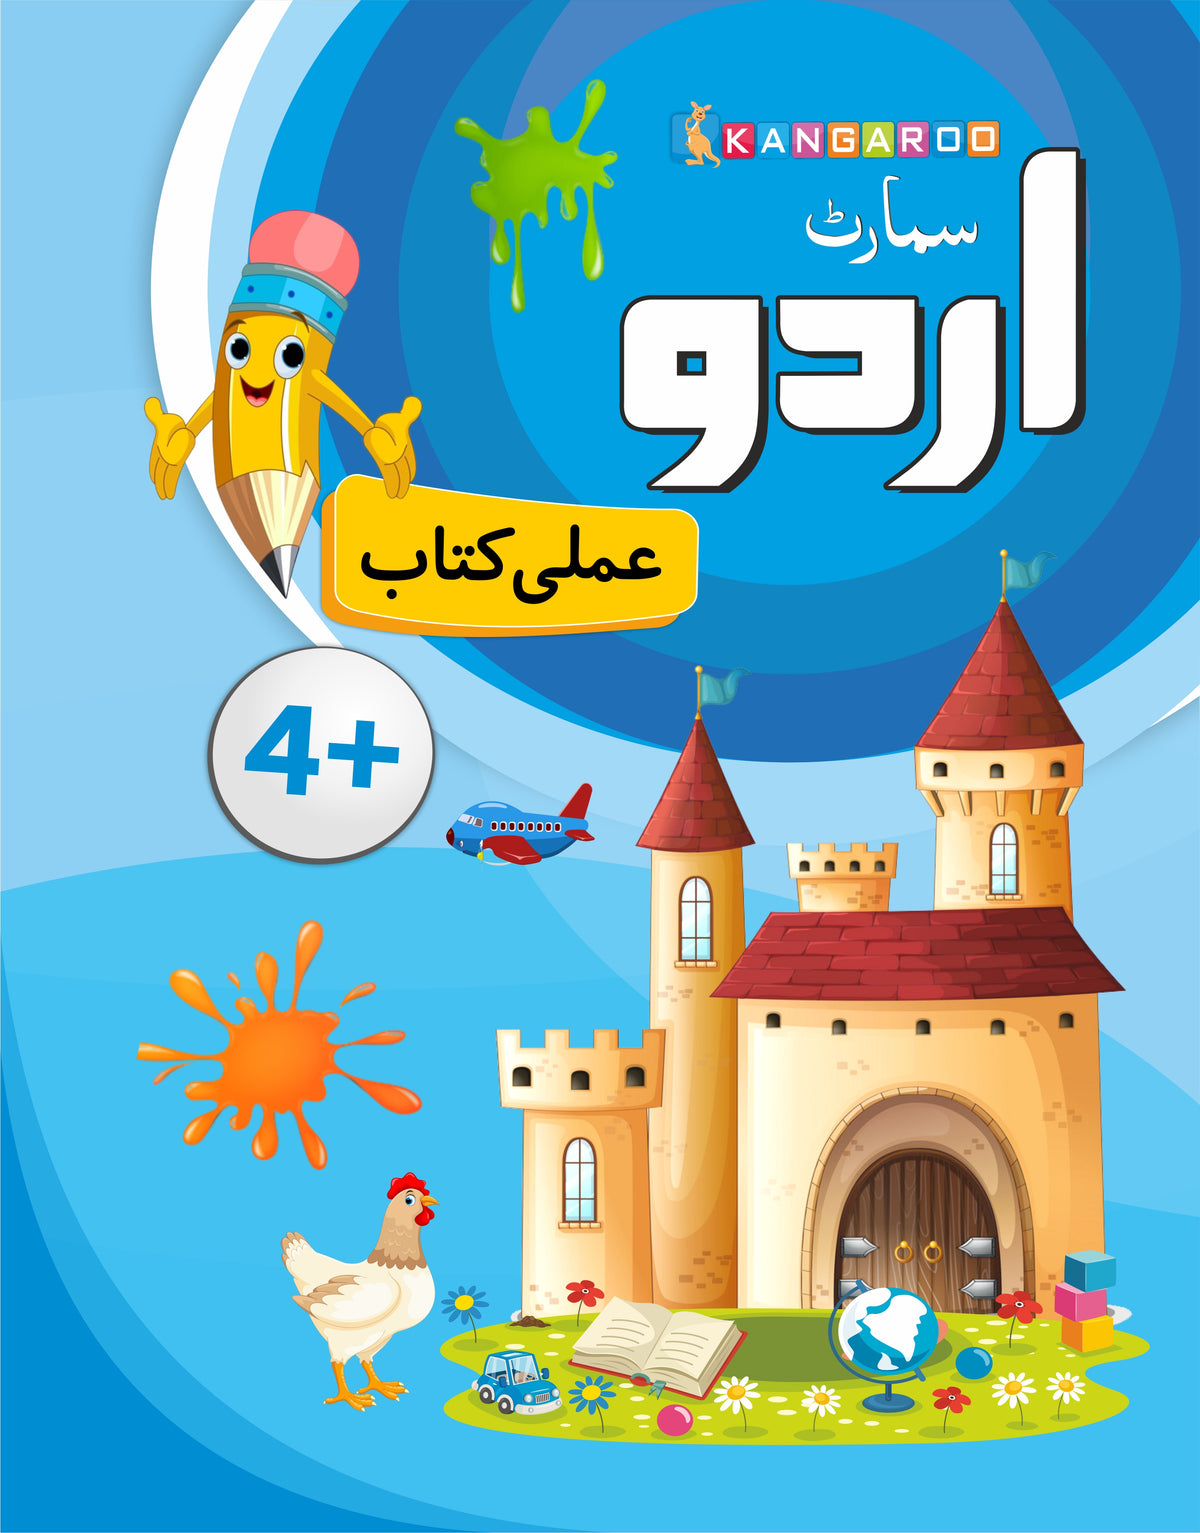 Smart Urdu Amli kitaab WORKBOOK 4+ age